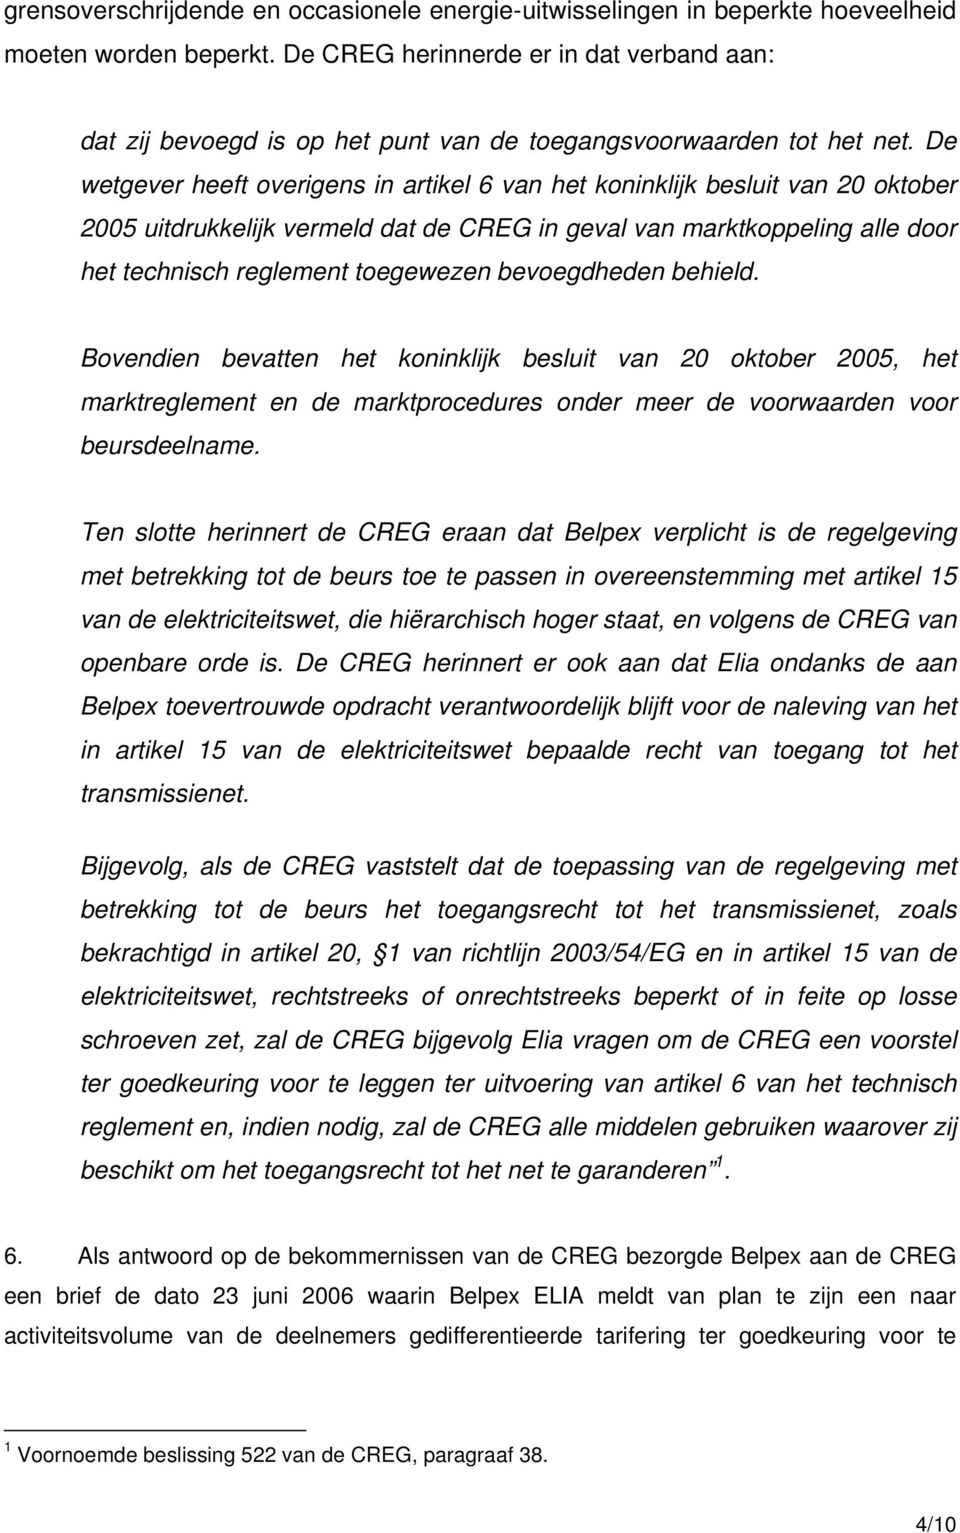 De wetgever heeft overigens in artikel 6 van het koninklijk besluit van 20 oktober 2005 uitdrukkelijk vermeld dat de CREG in geval van marktkoppeling alle door het technisch reglement toegewezen